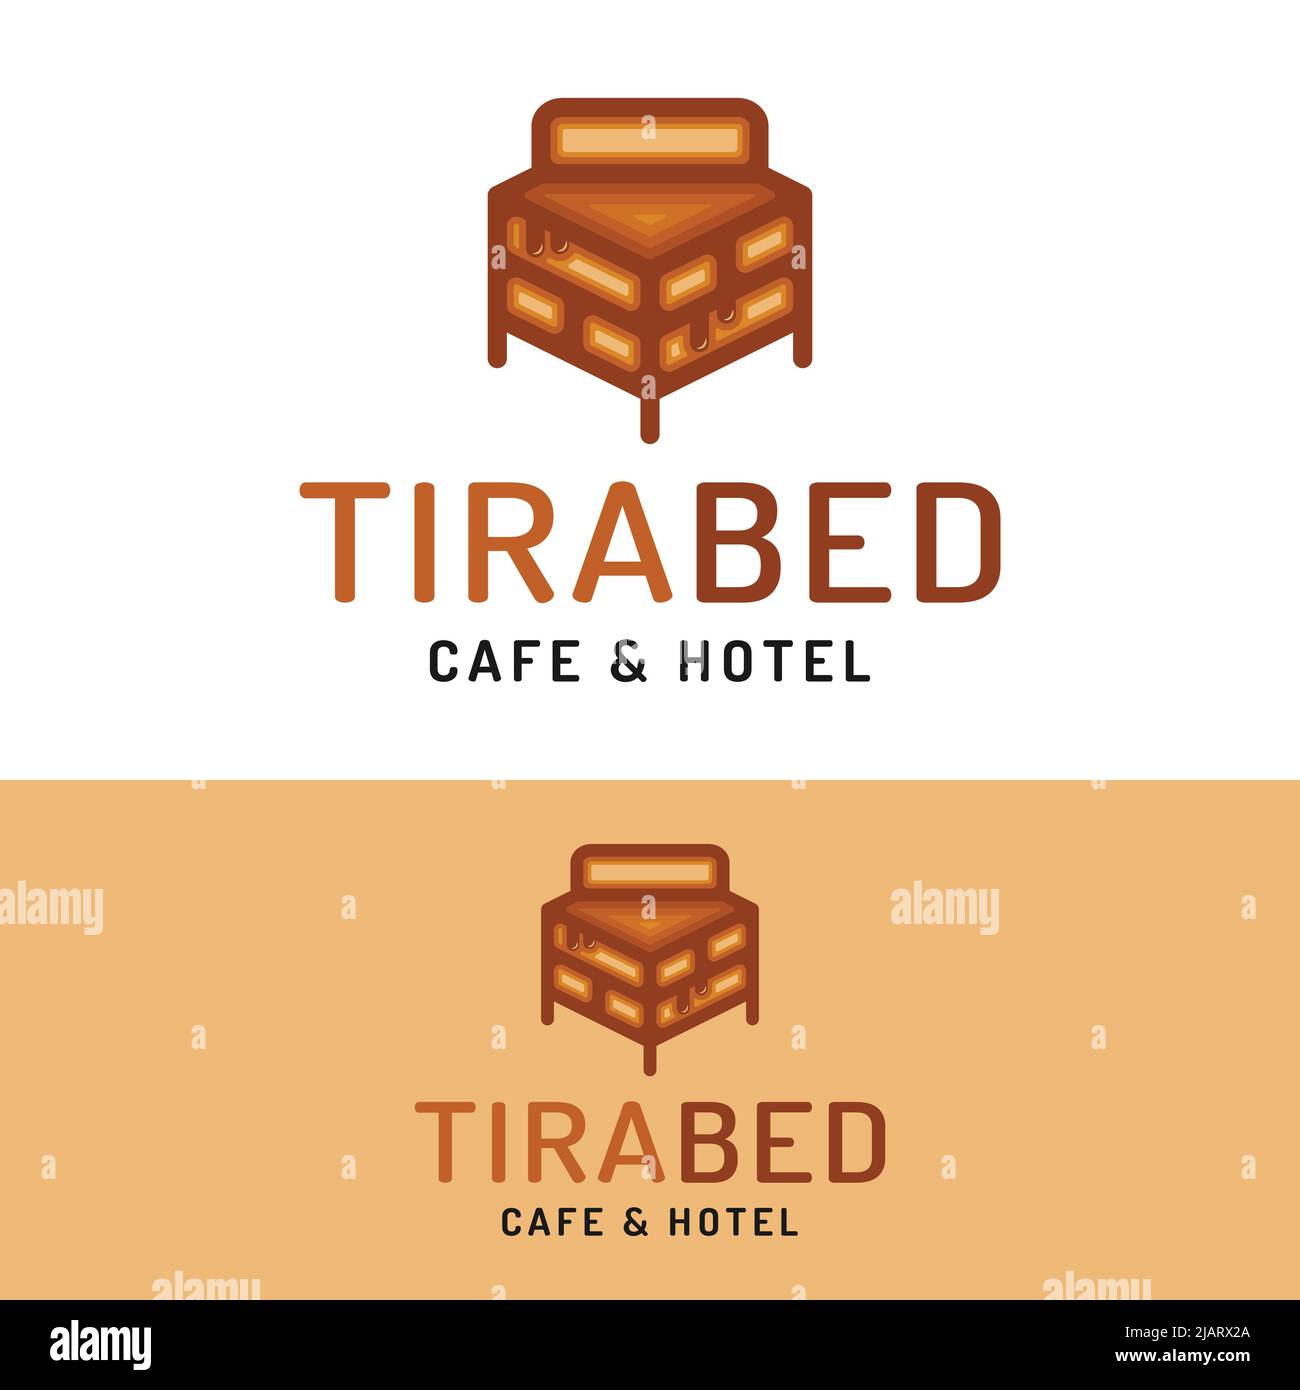 Modello di design con logo Tiramisu Chocolate Cake Bed Cafe Hotel. Adatto per alloggiare Hotel Inn Cafe Bakery Cake House Shop Business Brand Company Logo De Illustrazione Vettoriale